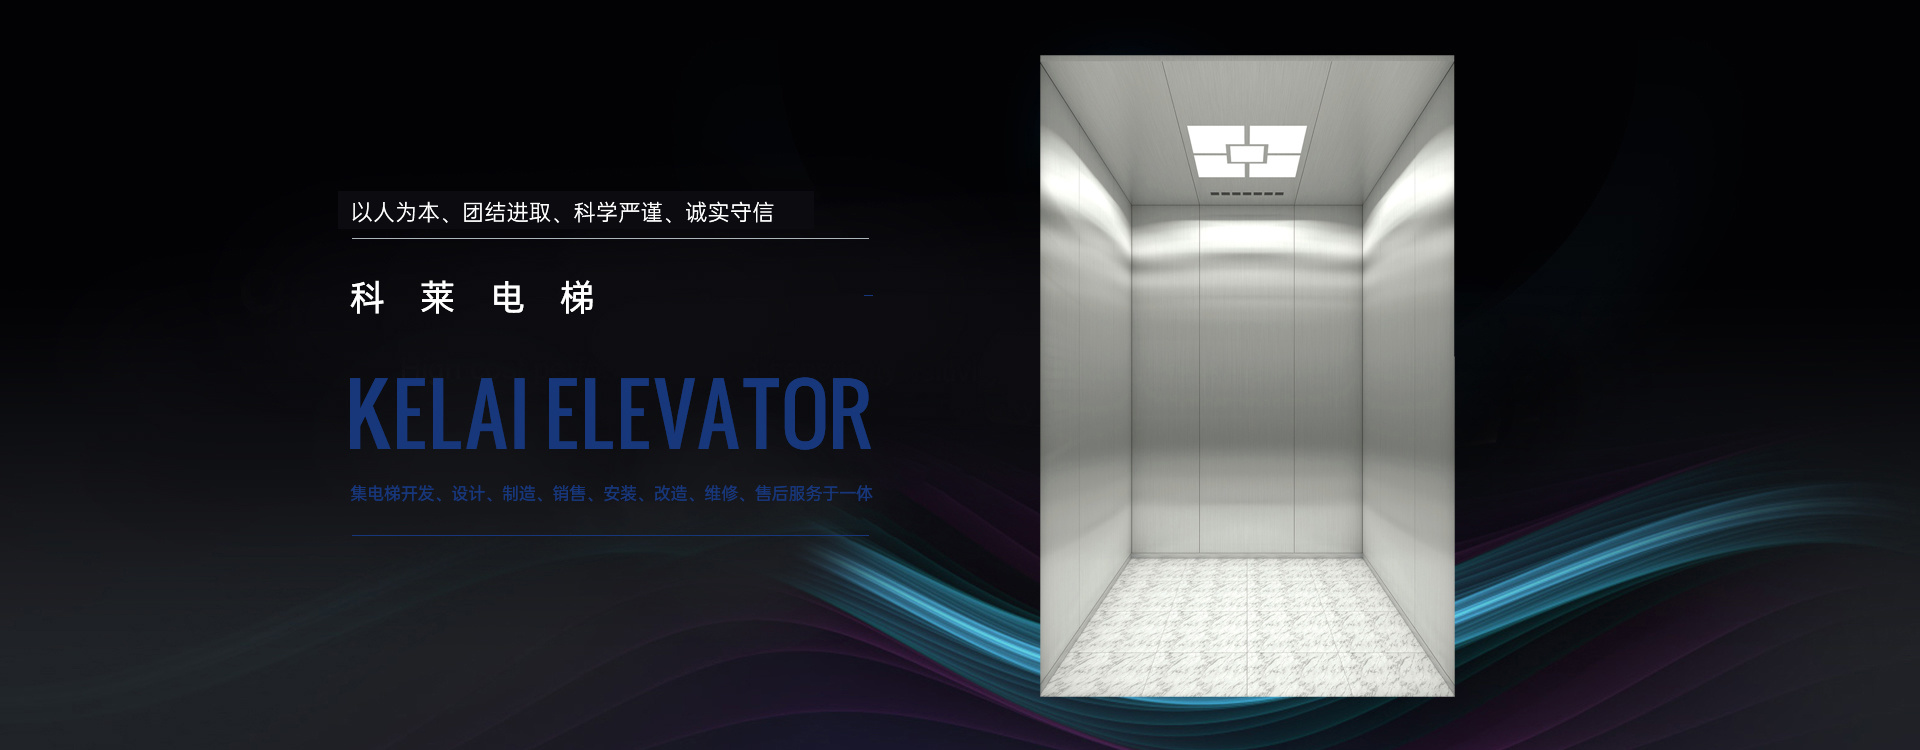 Sichuan Kelai Elevator Co., Ltd.